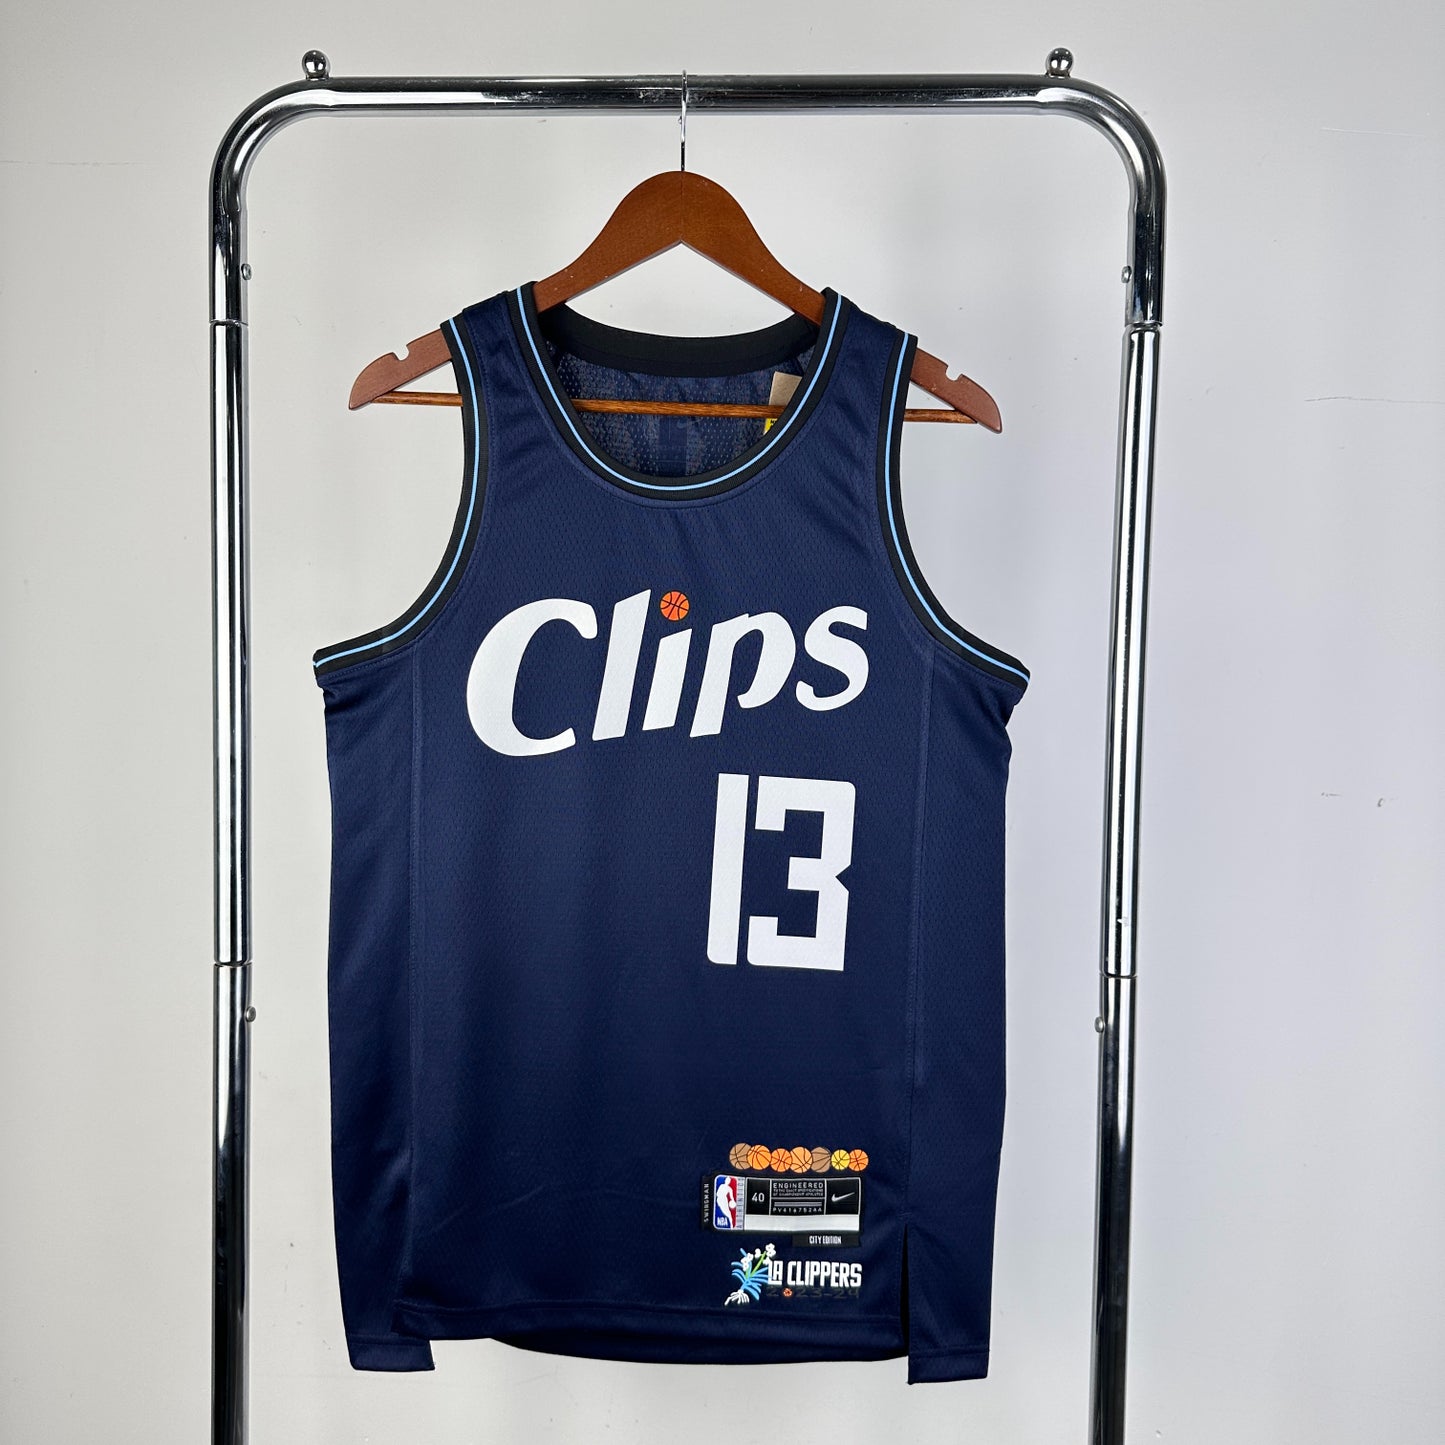 LA Clippers 23/24 City Edition Jersey Nike Swingman